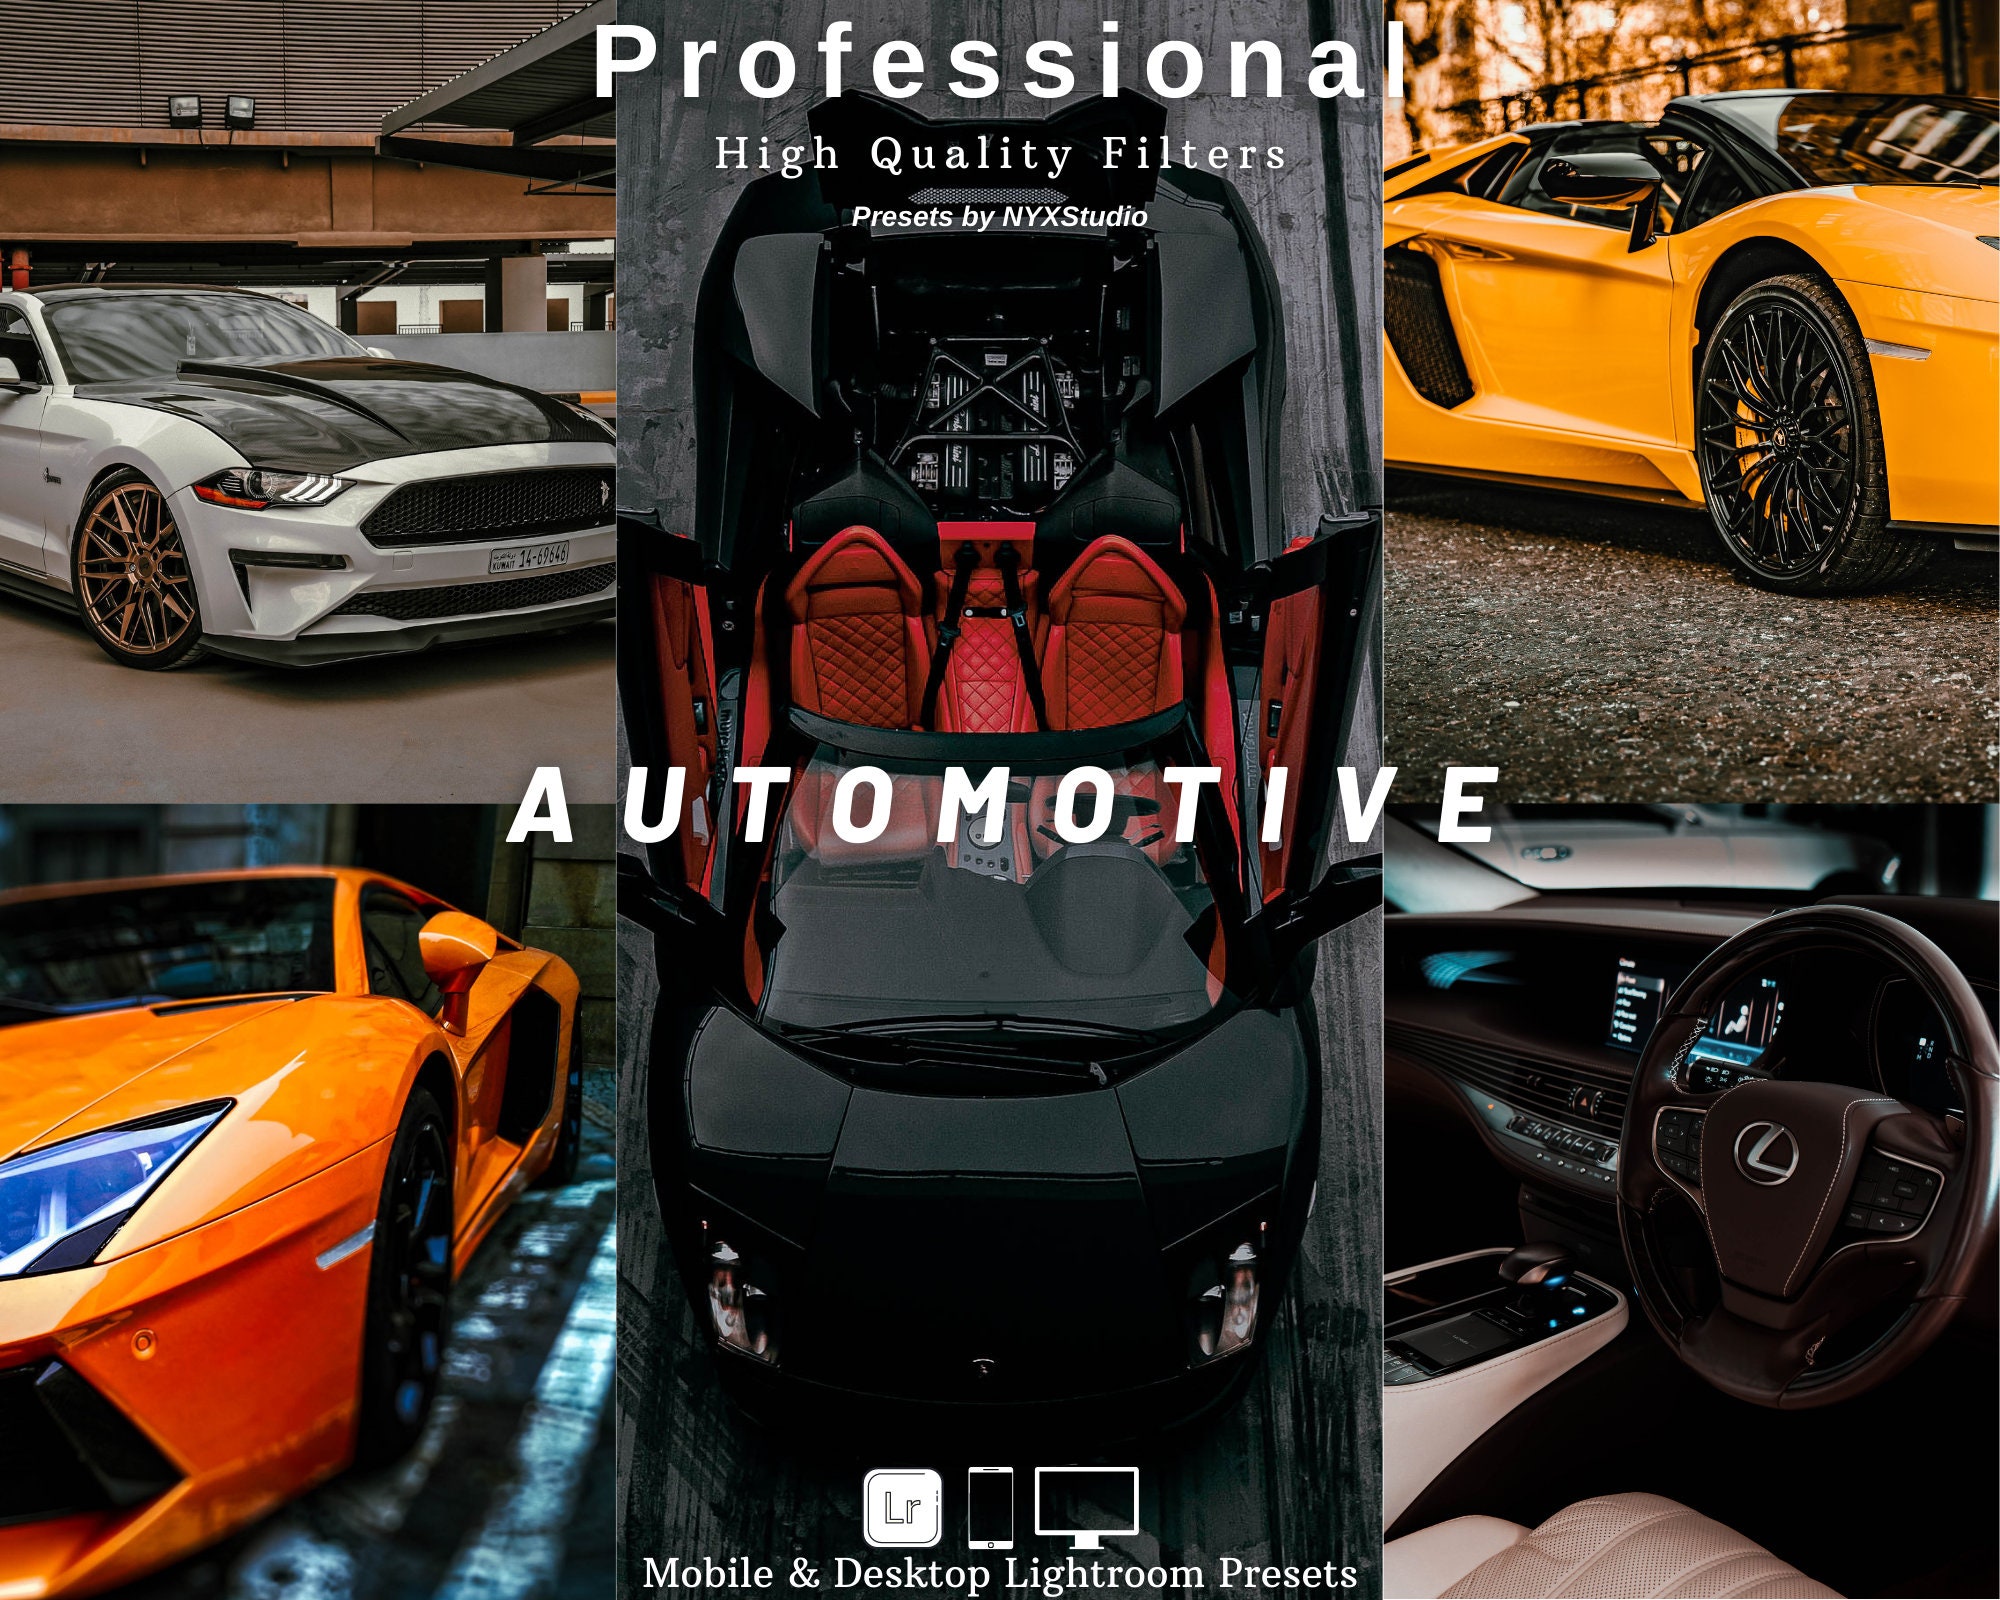 Automotive Lightroom Presets for LR Desktop & Mobile App & Camera